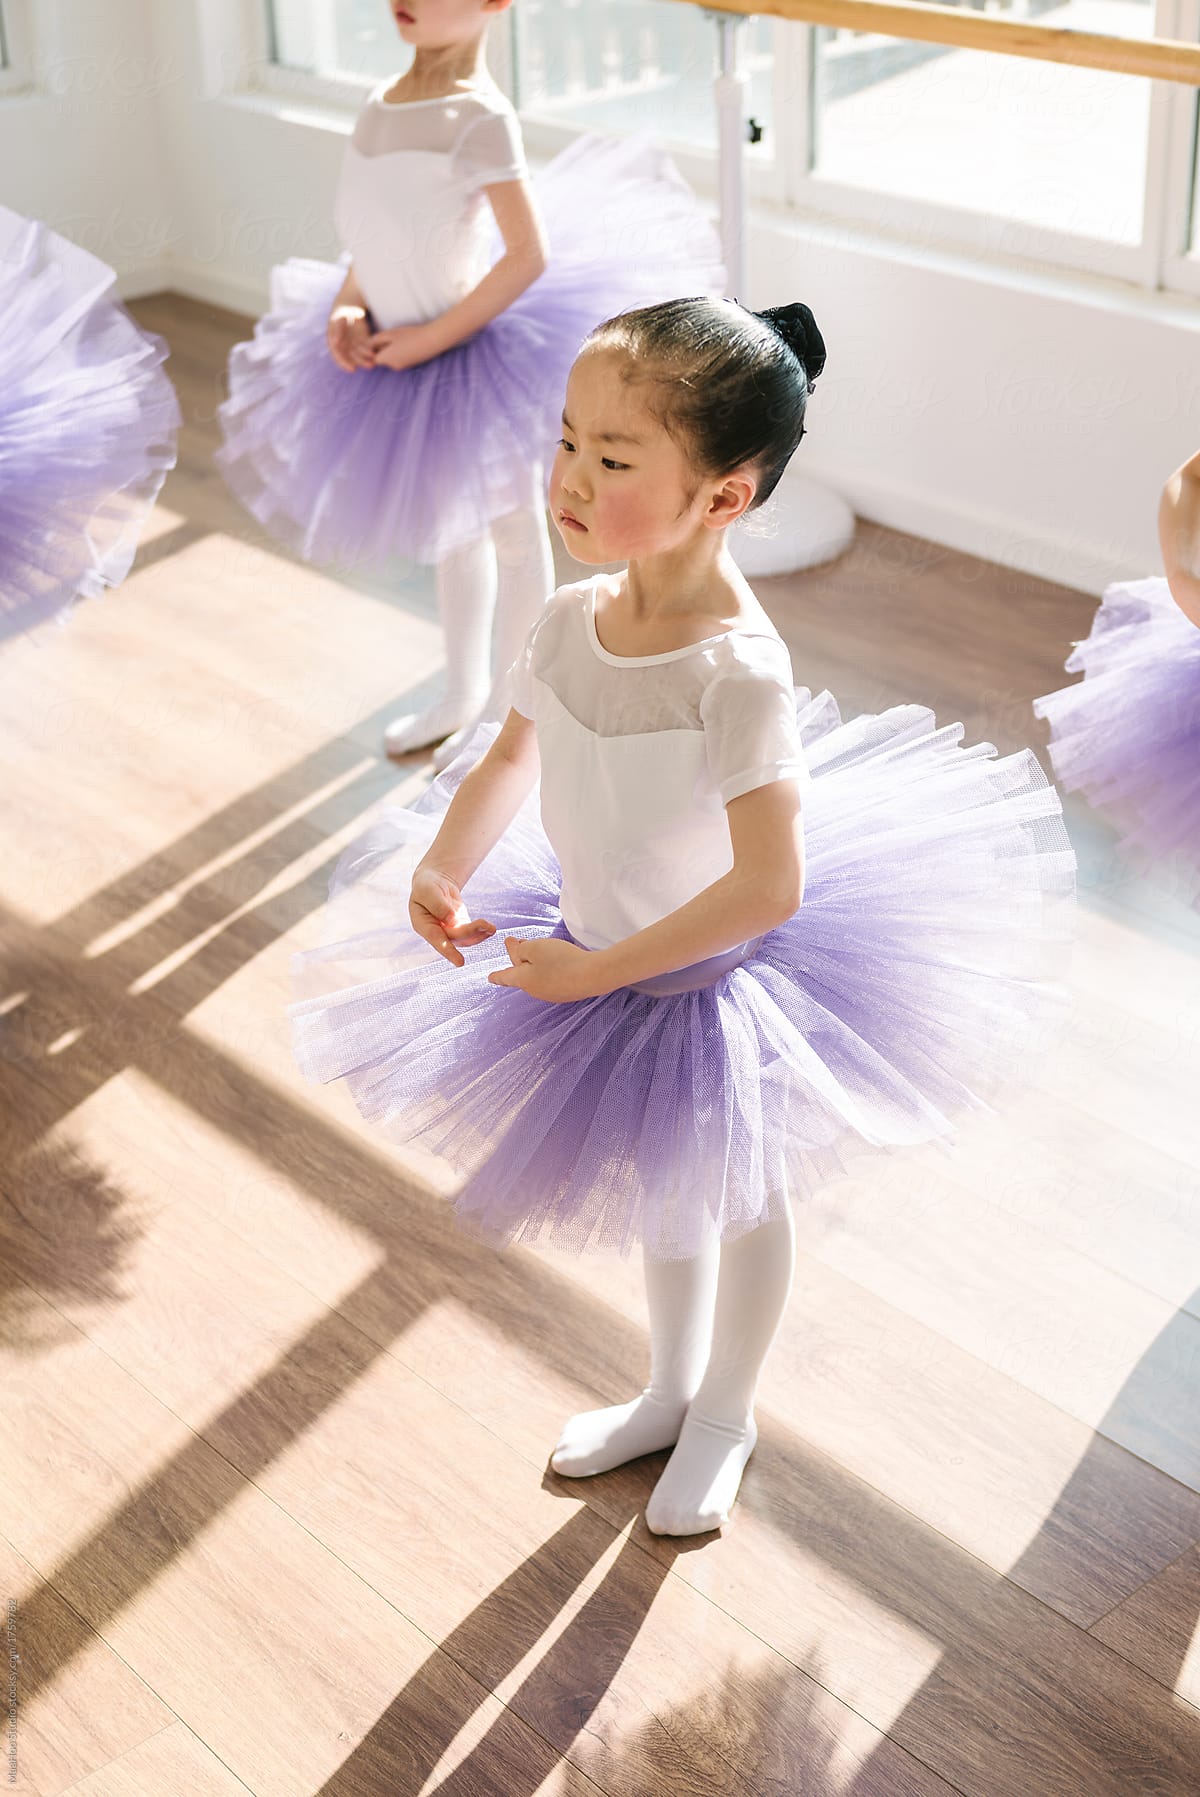 Children practicing ballet poses in ballet studio